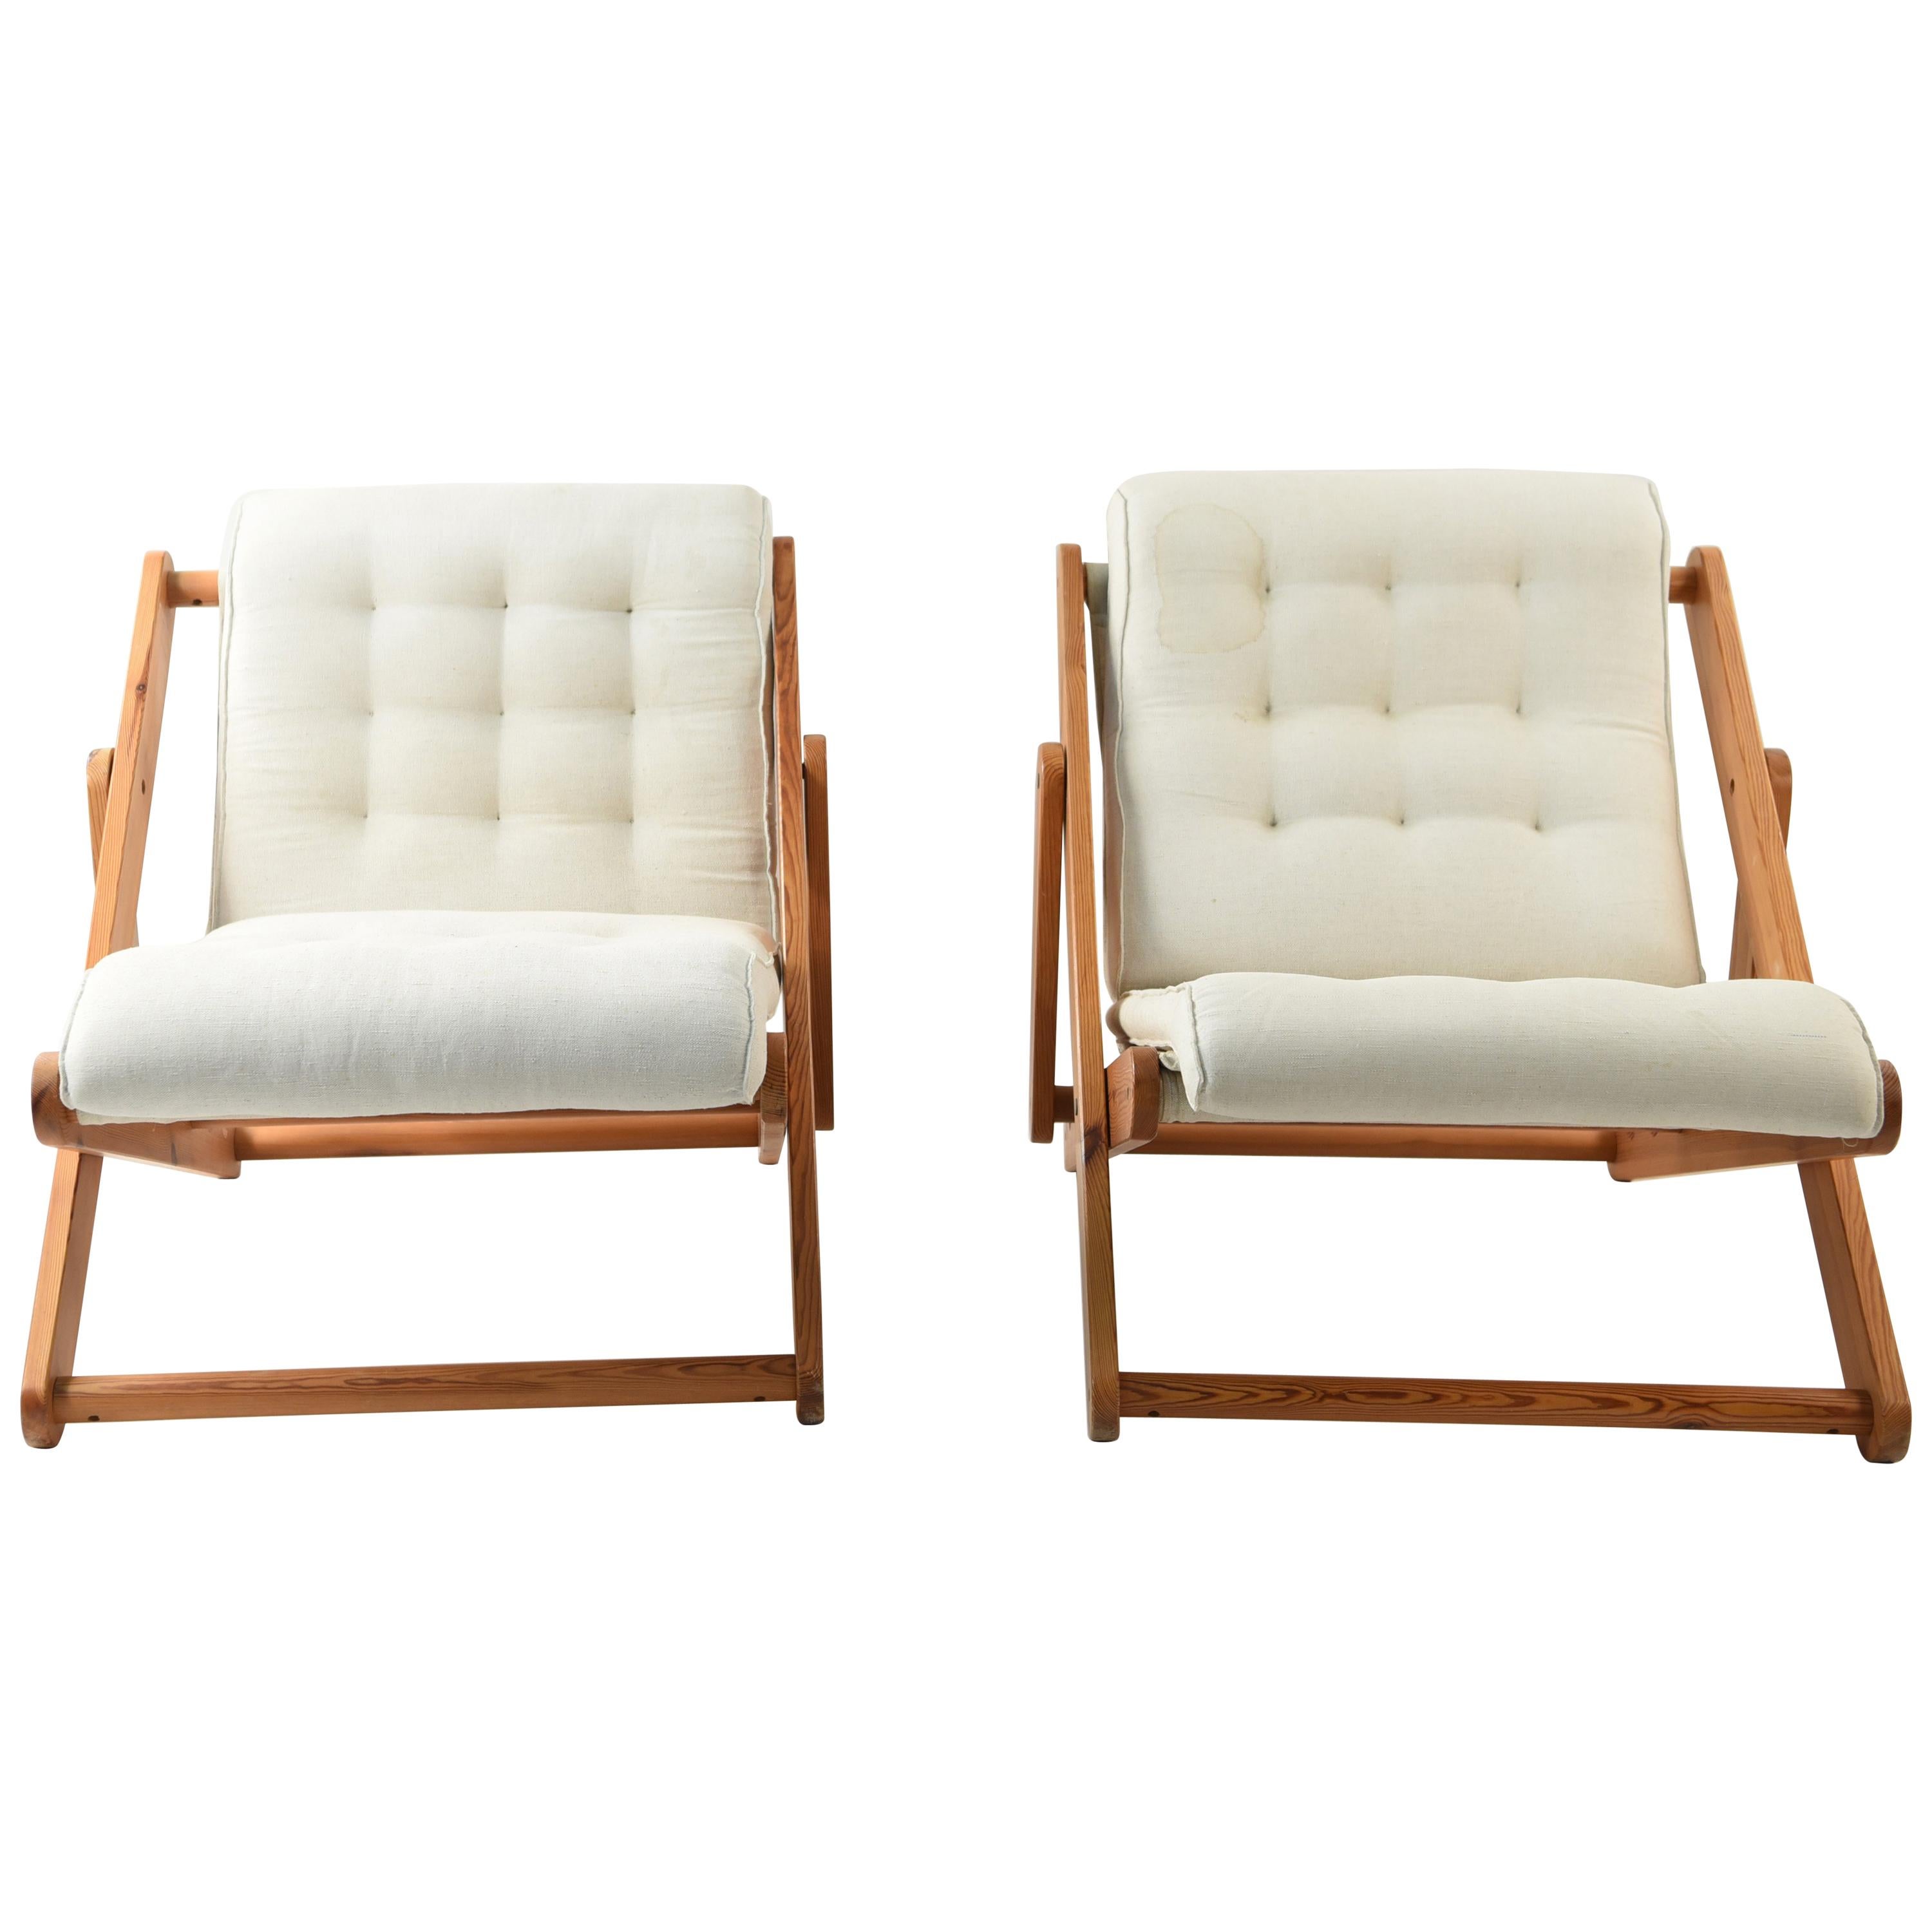 Pair of Danish Midcentury Pine Kontiki Lounge Chairs by Gillis Lundgren